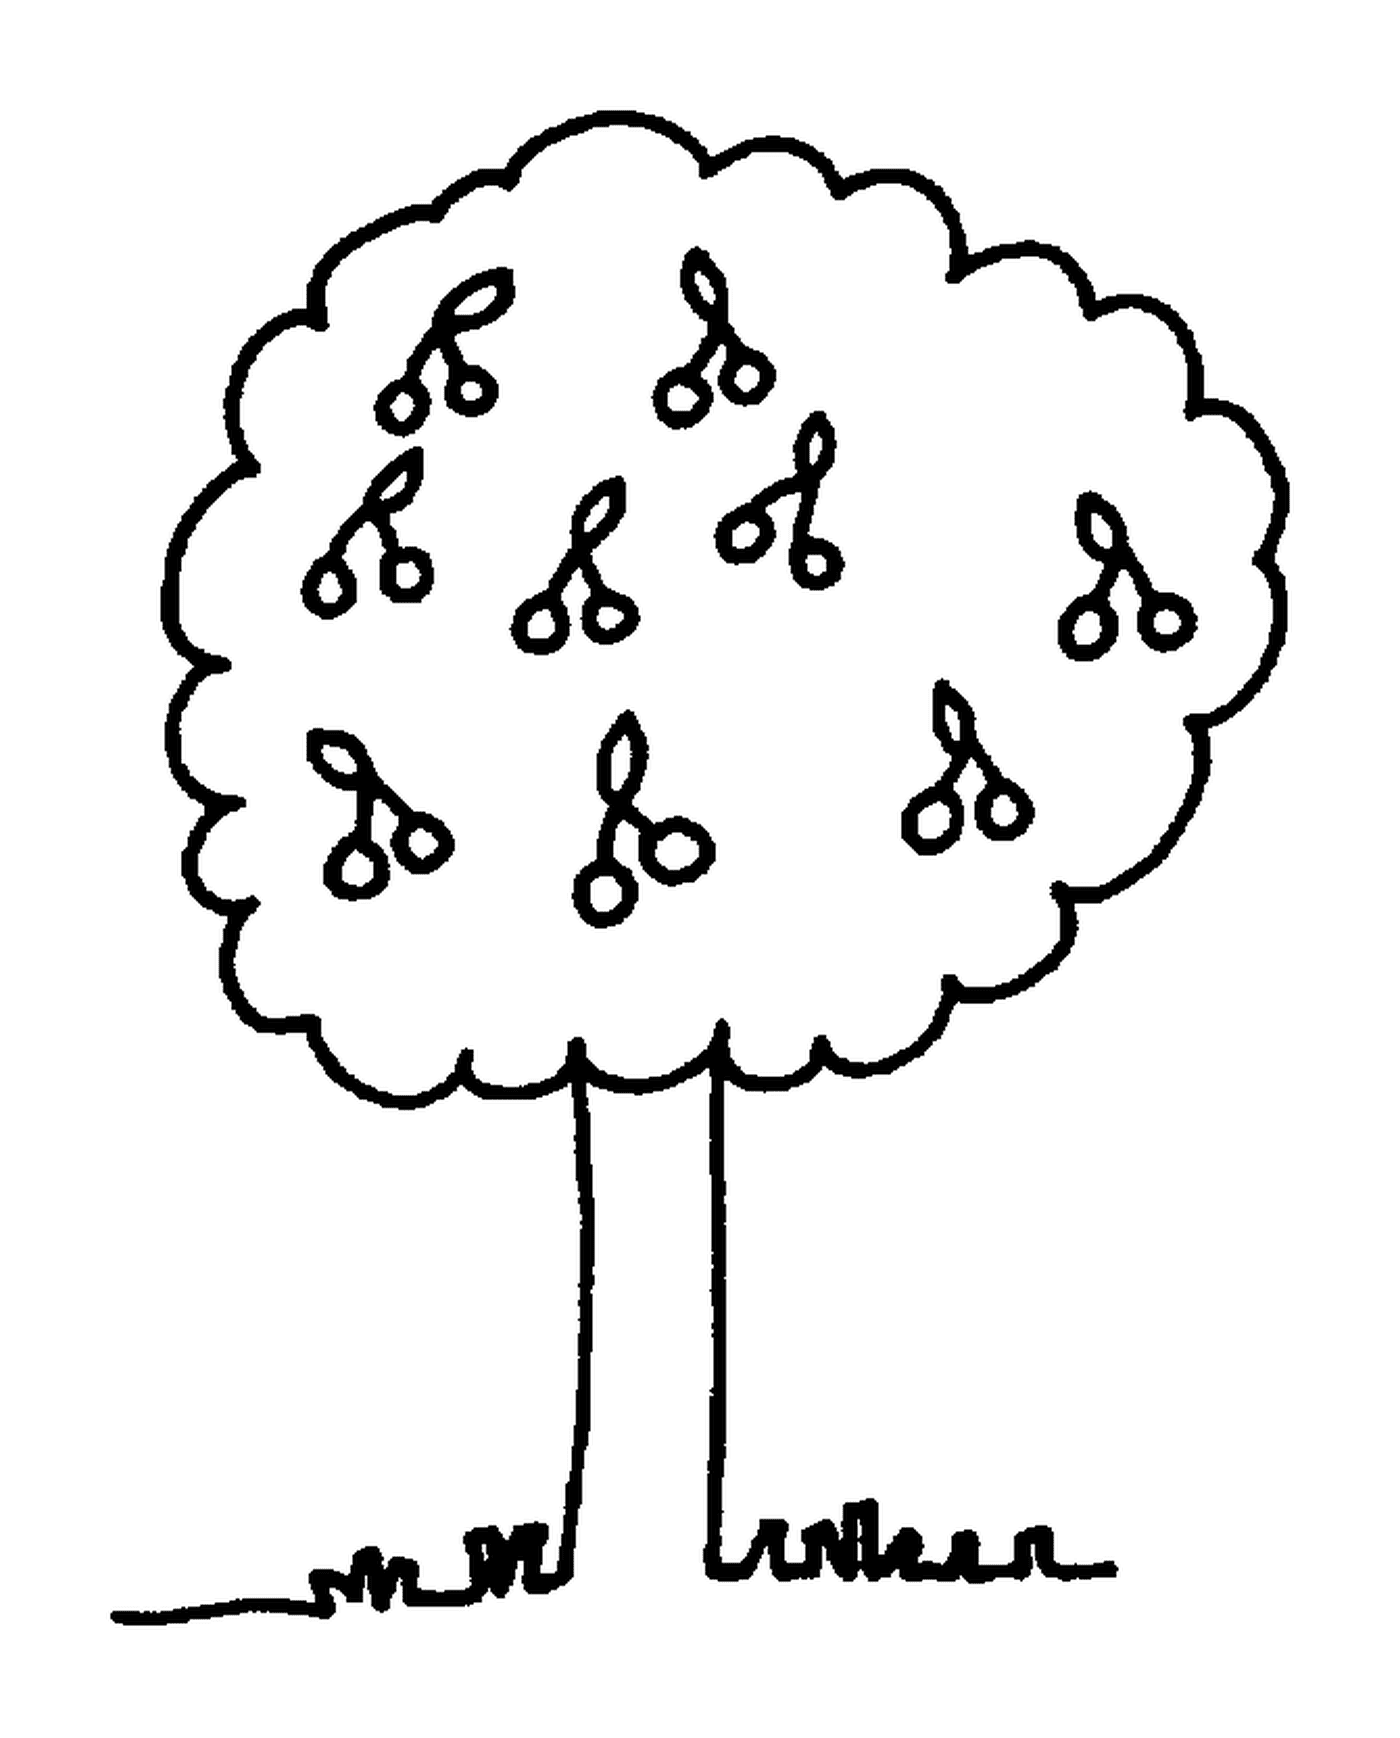   Un arbre avec des ciseaux 